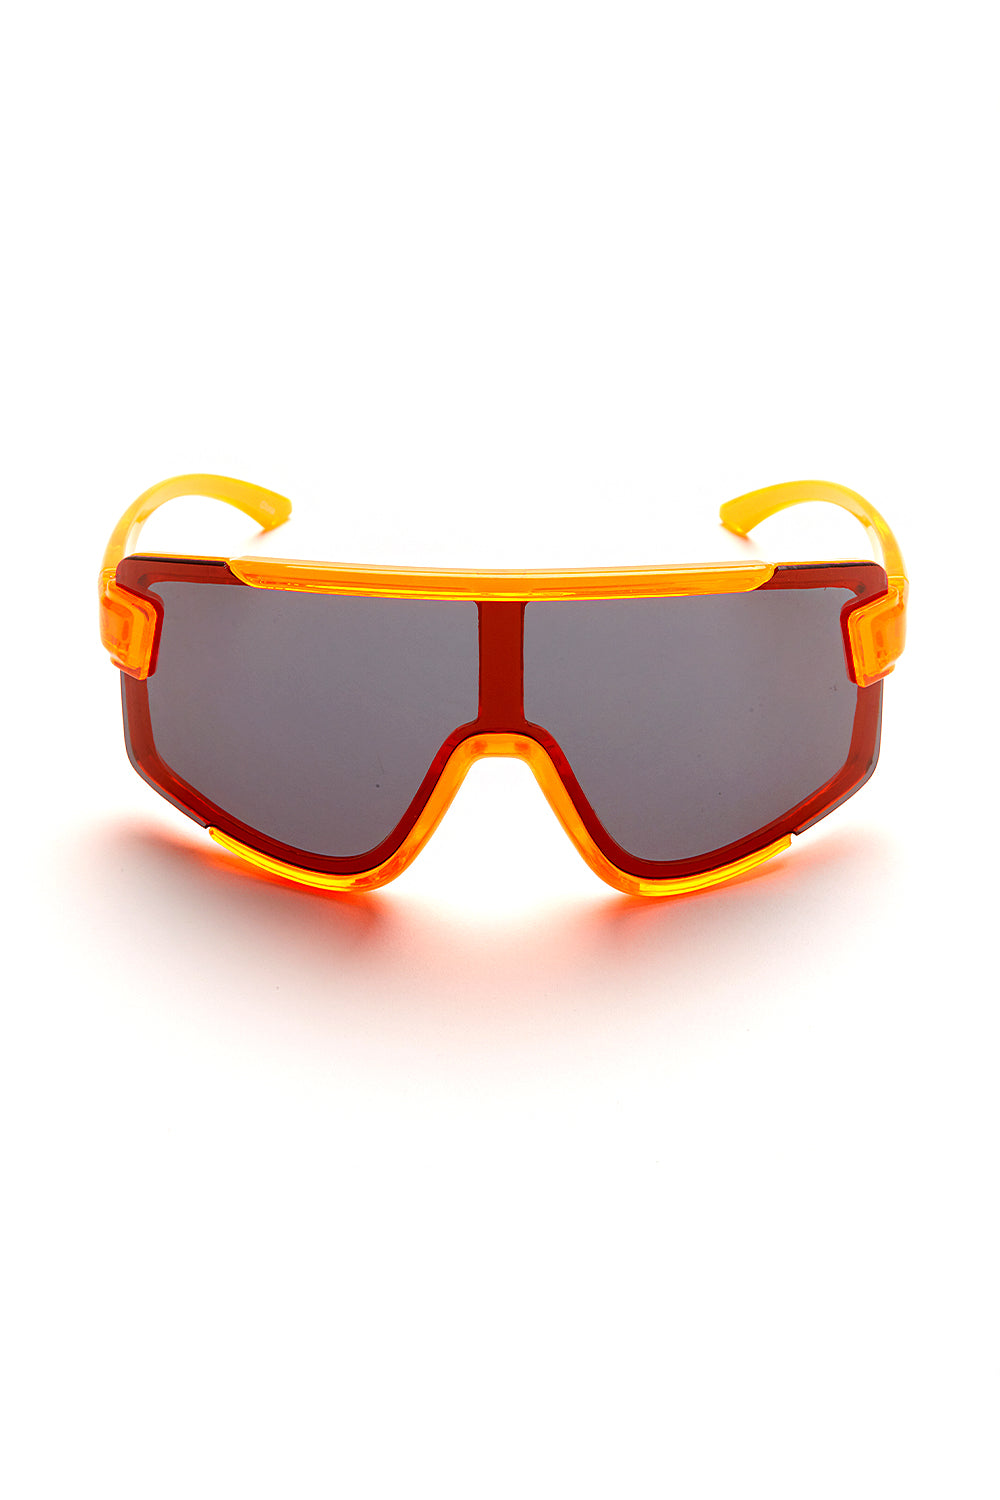 Avenger Sunglasses - Slick It Up 